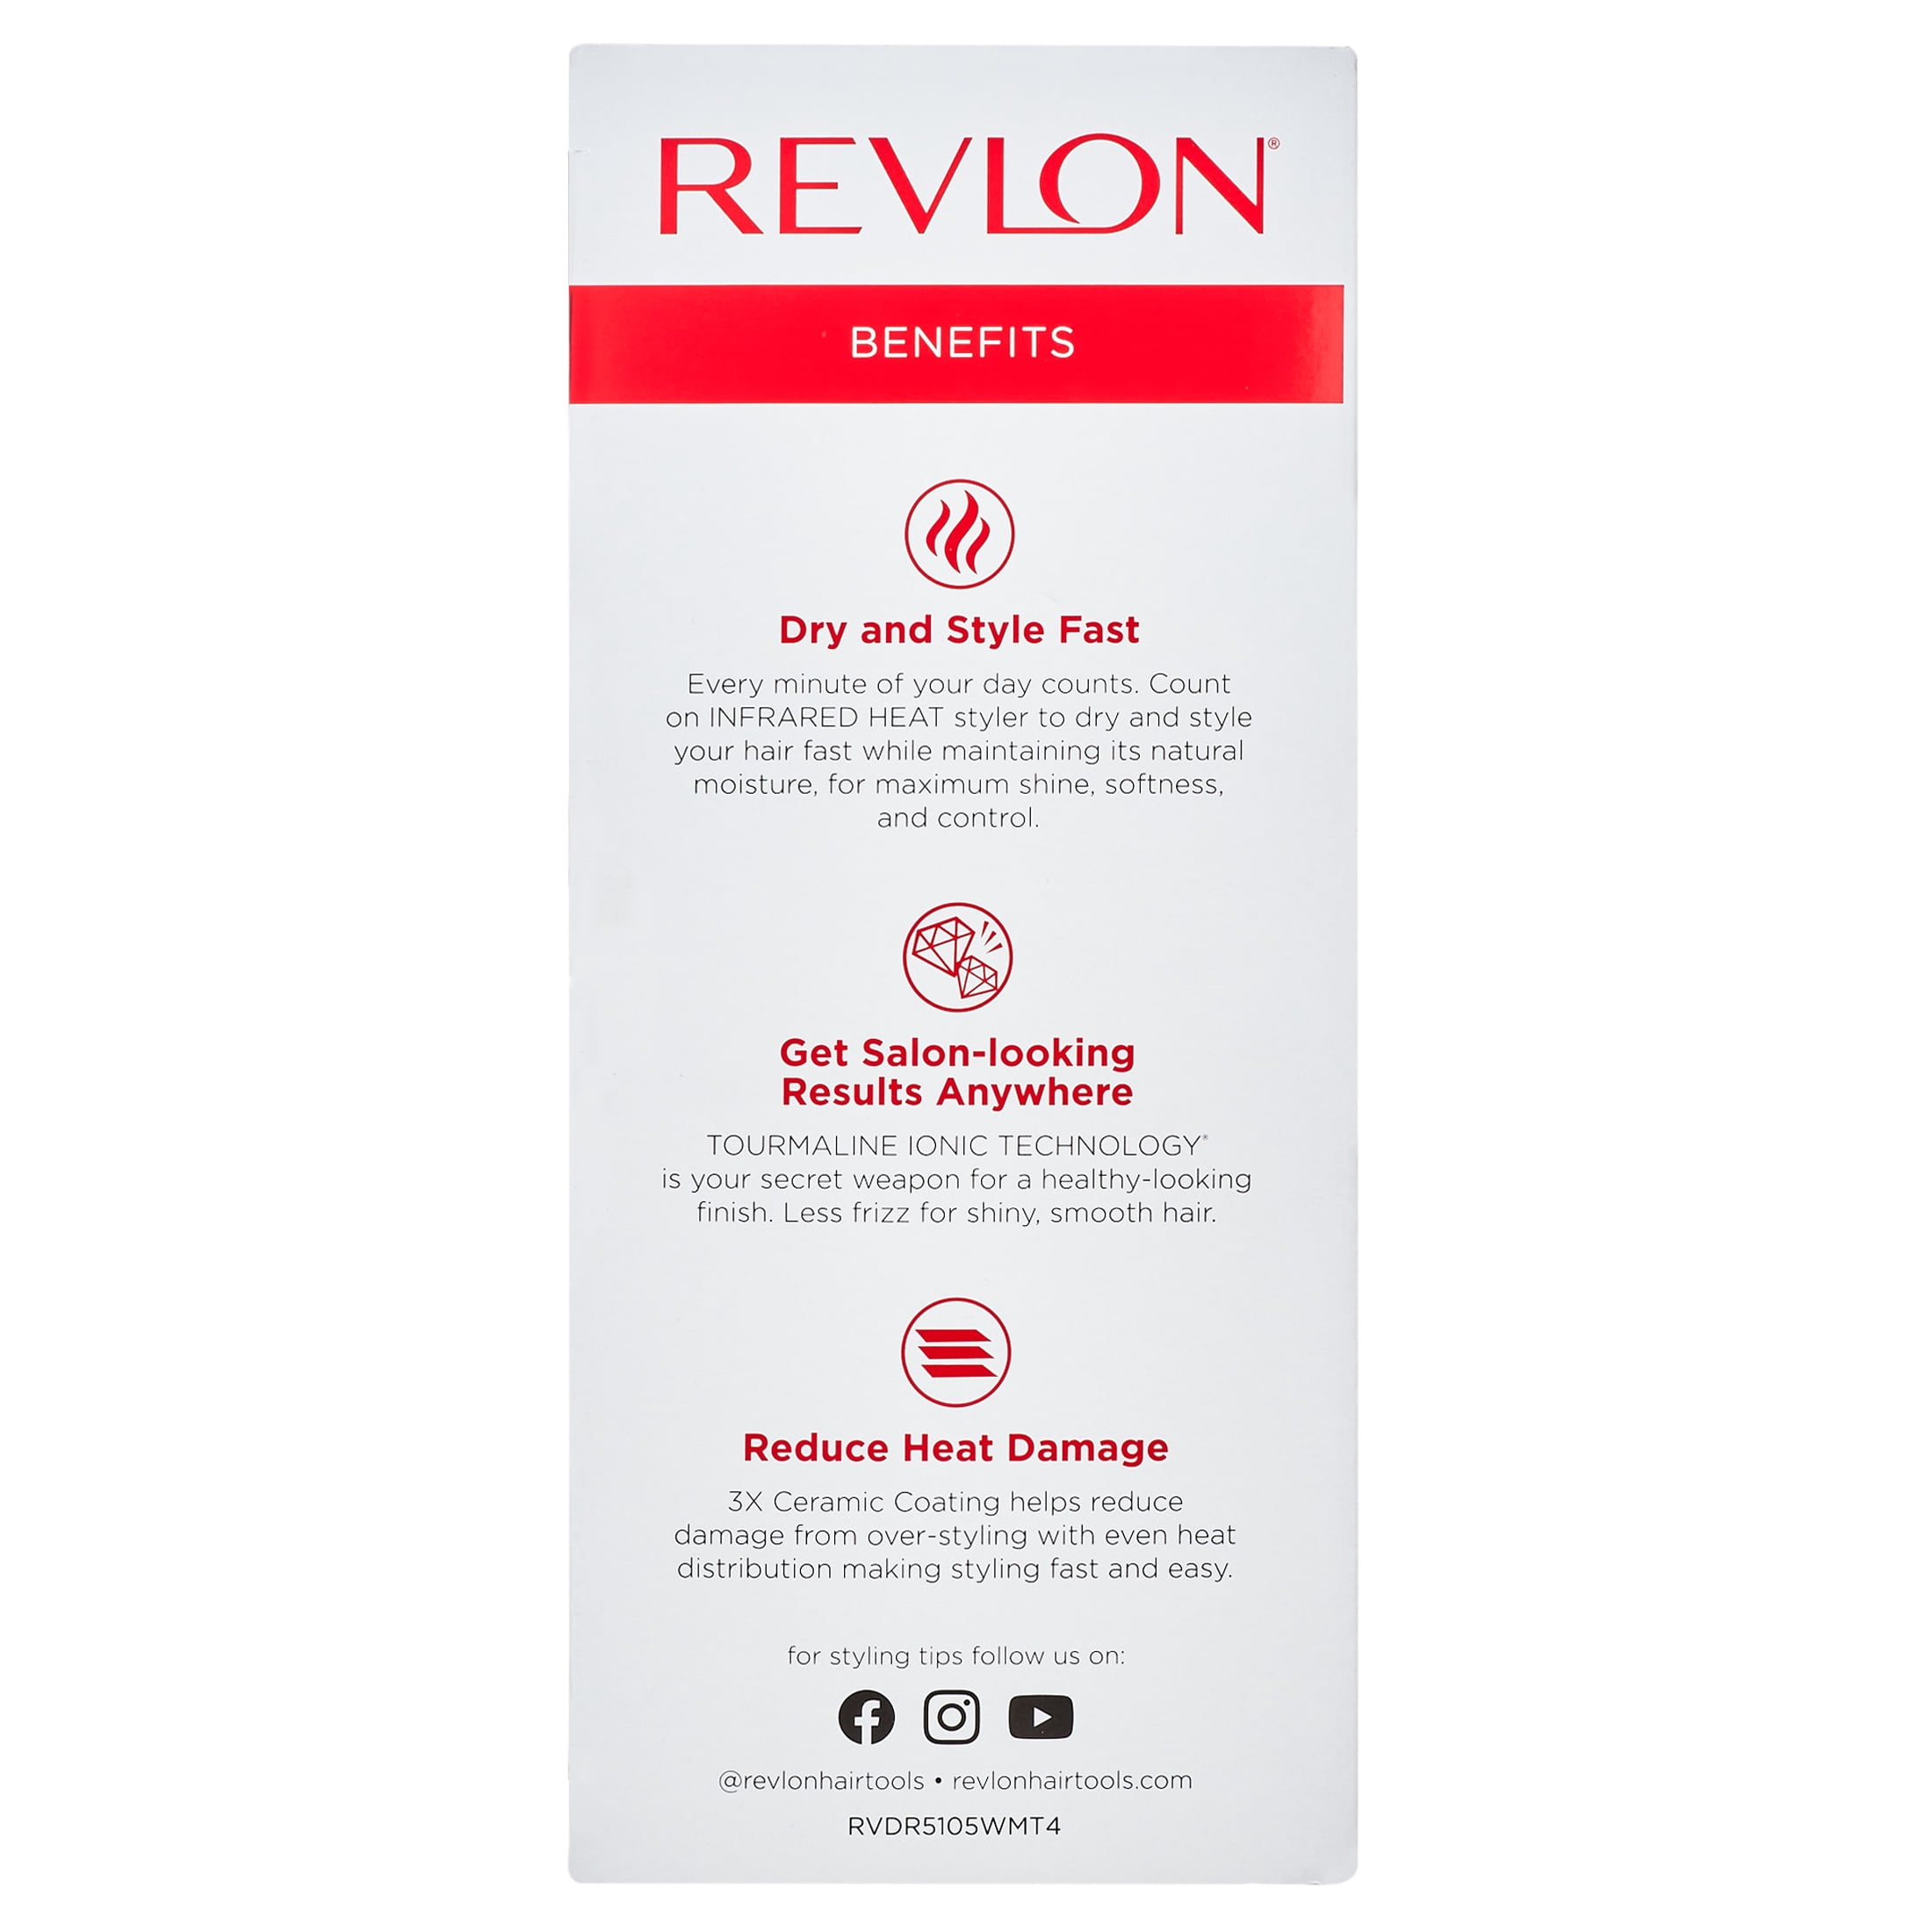 Revlon 1875W Infrared Heat + Ceramic Hair Dryer, White